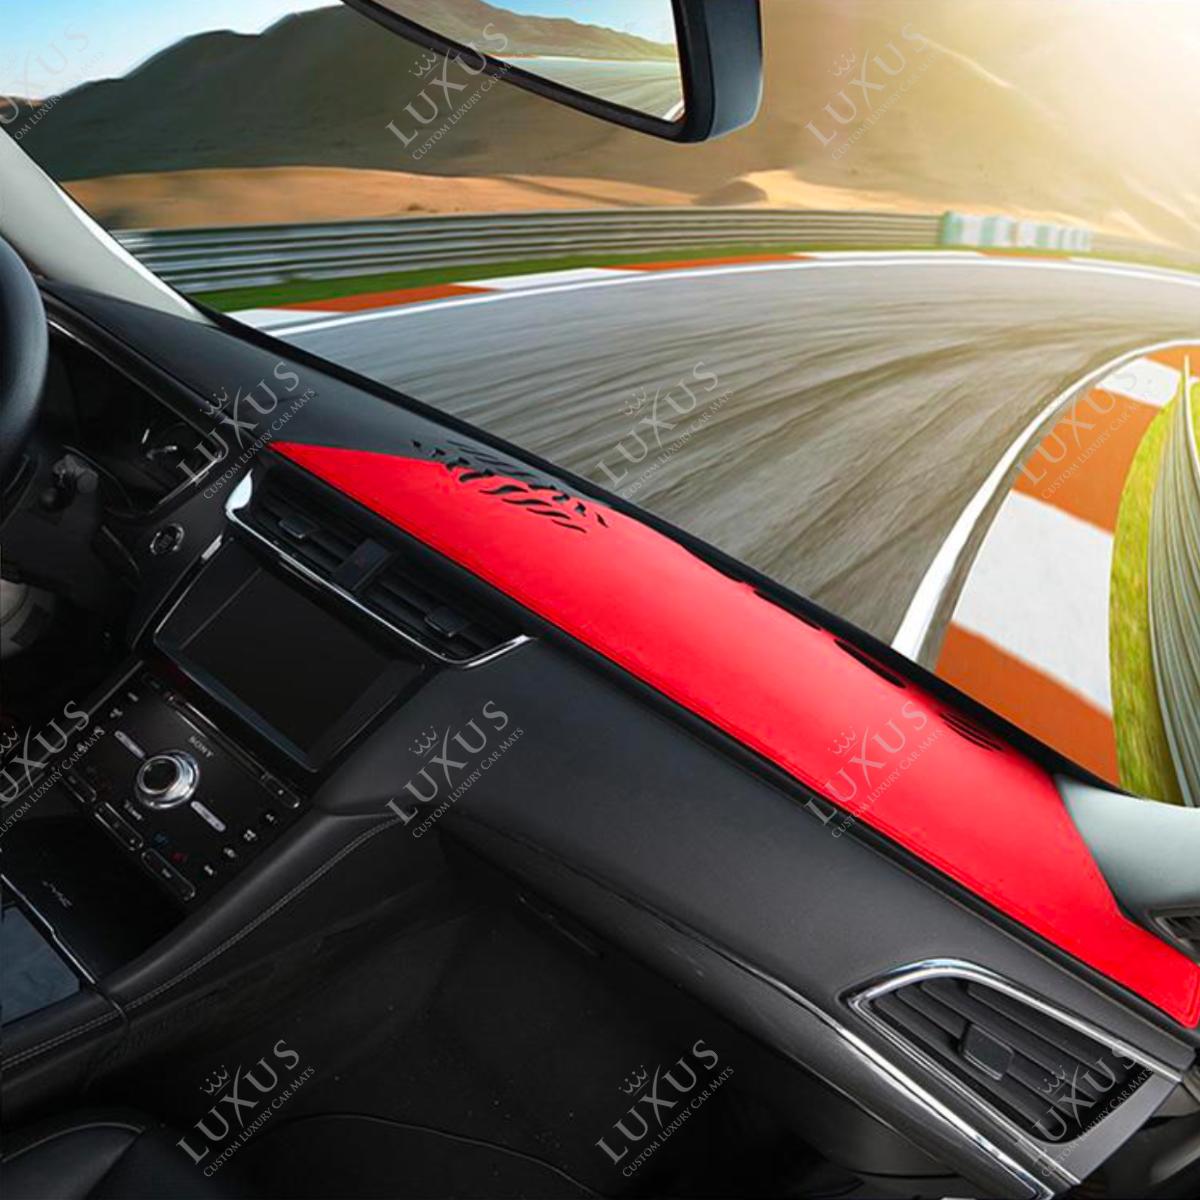 Hybrid Black & Ferrari Red Custom-Fit Premium Brushed Suede Dash Cover